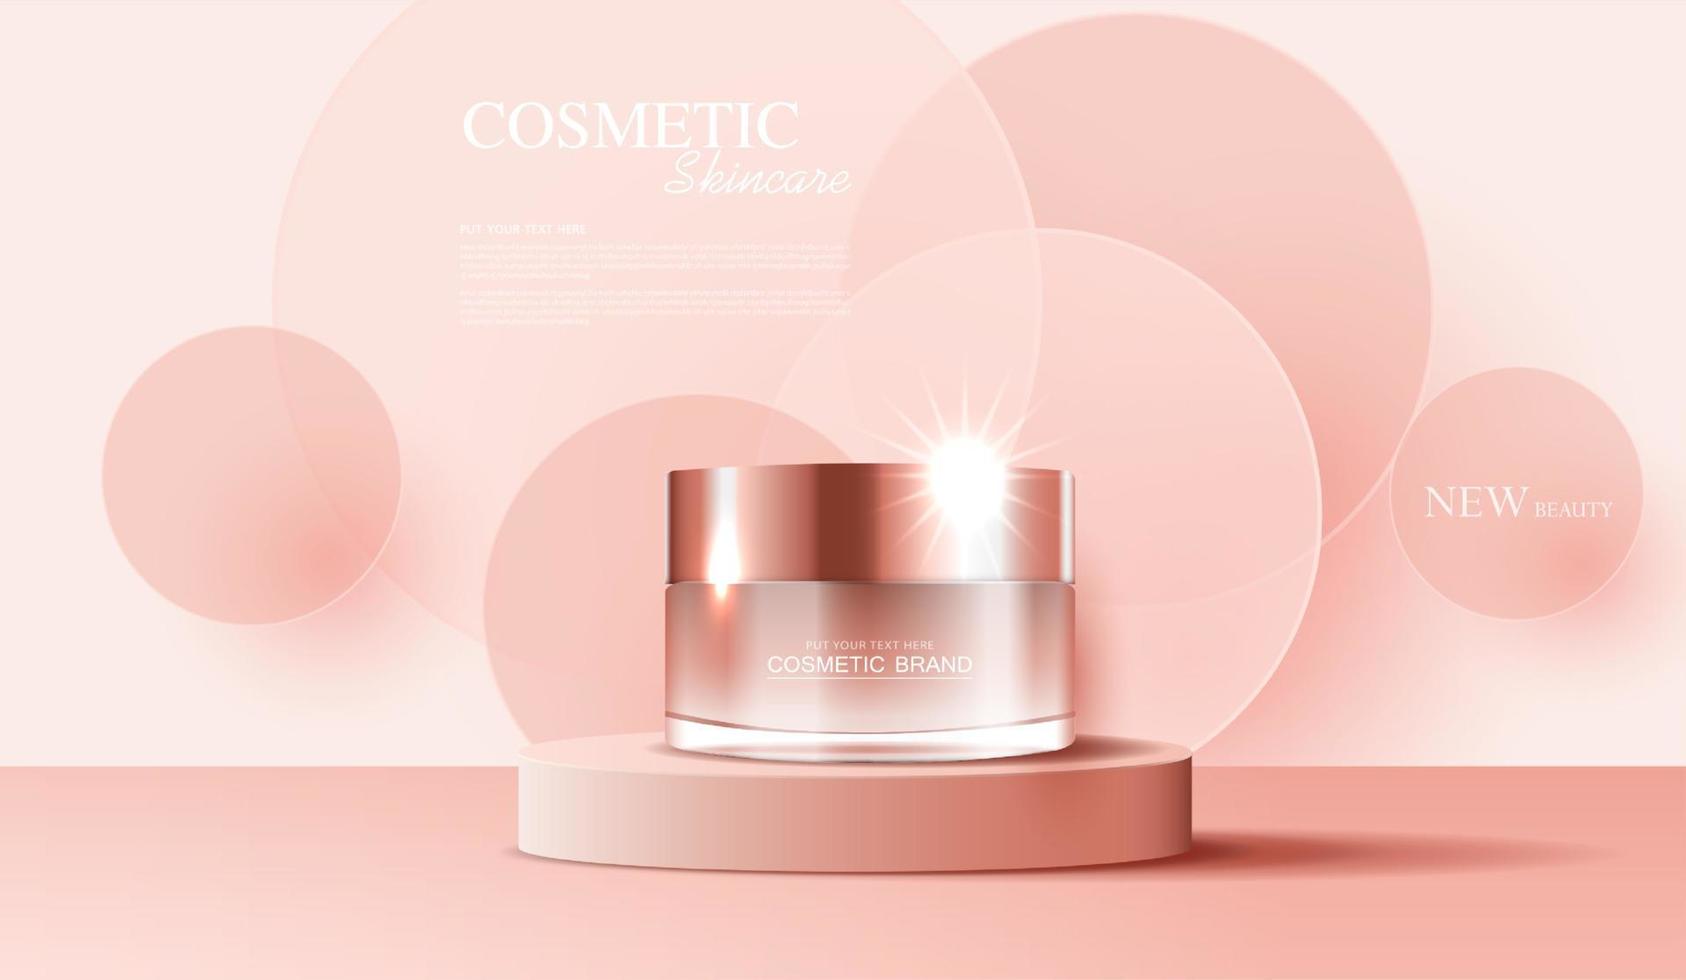 kosmetika eller hudvårdsprodukter annonser med flaska, bannerannons för skönhetsprodukter, rosa bakgrundsglittrande ljuseffekt. vektor design